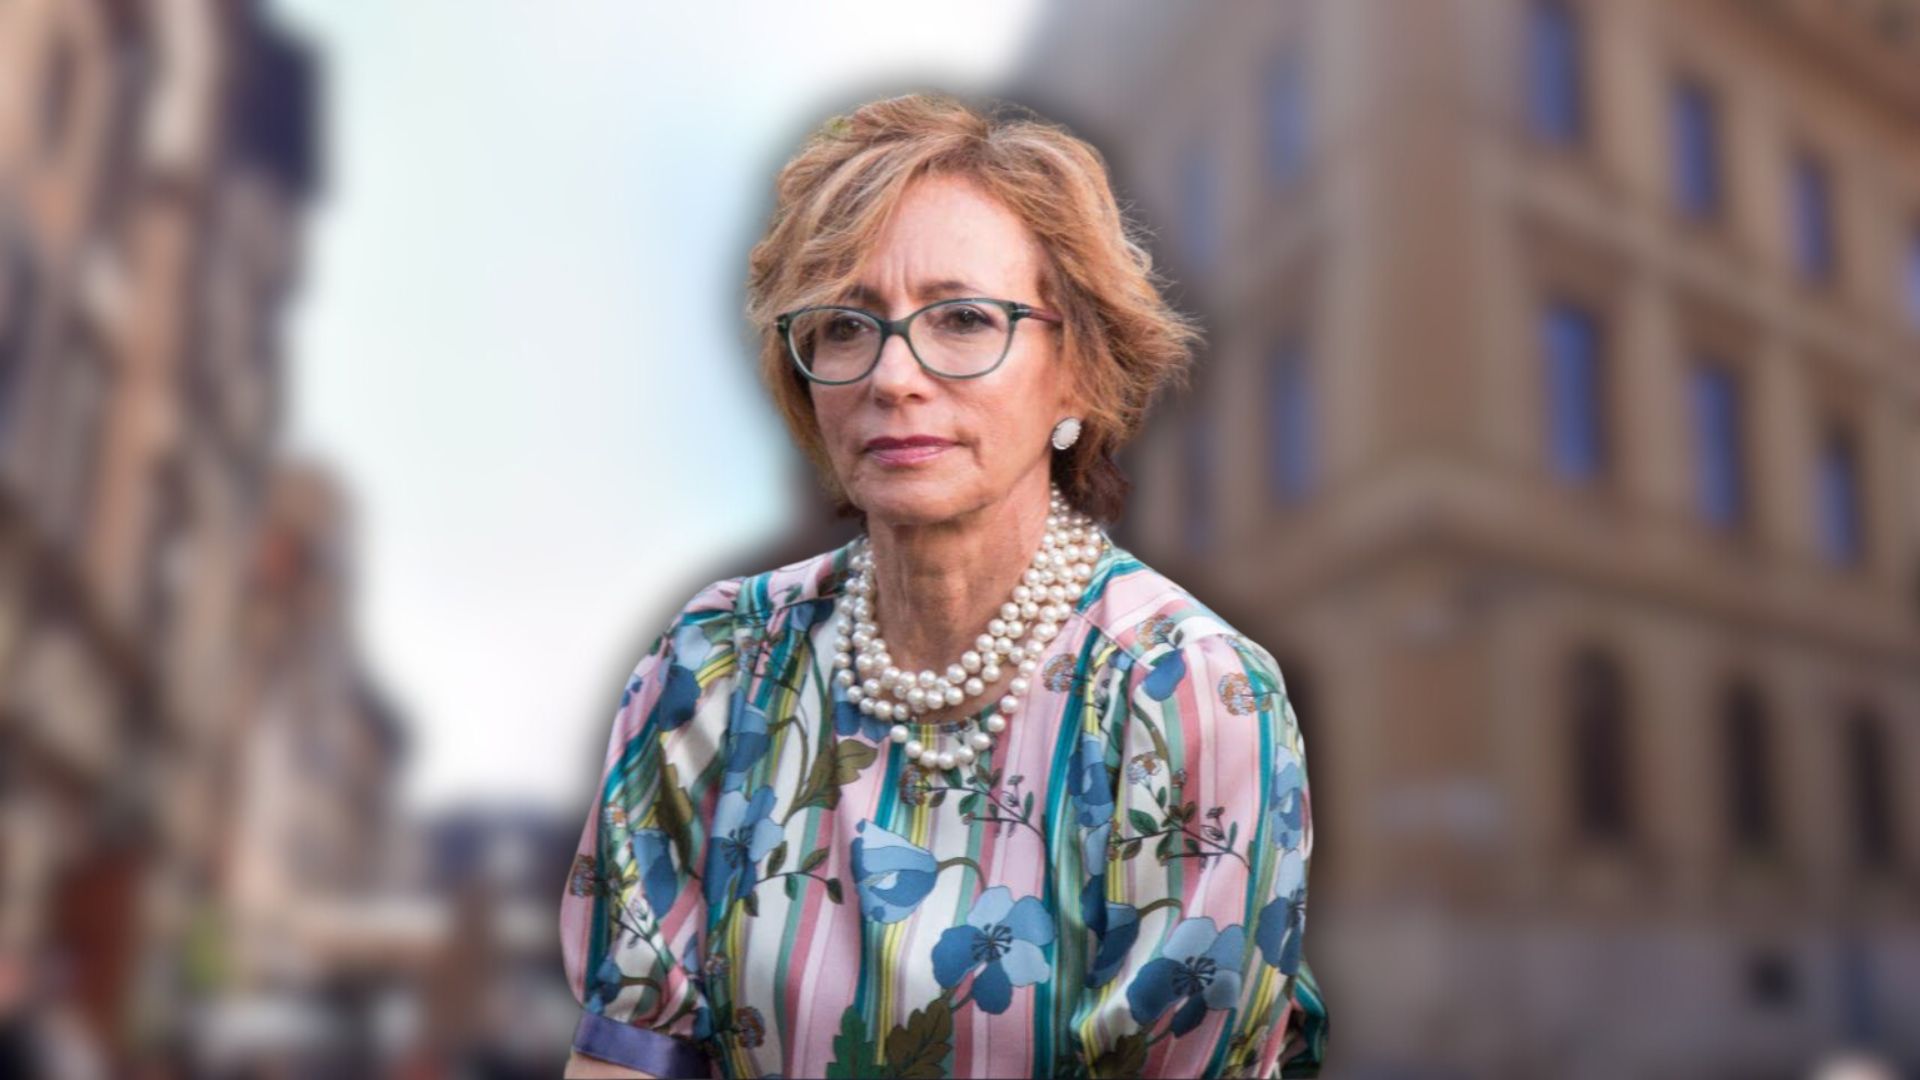 La direttrice Milena Pavoncello va in pensione: 45 anni tra cambiamenti e sfide